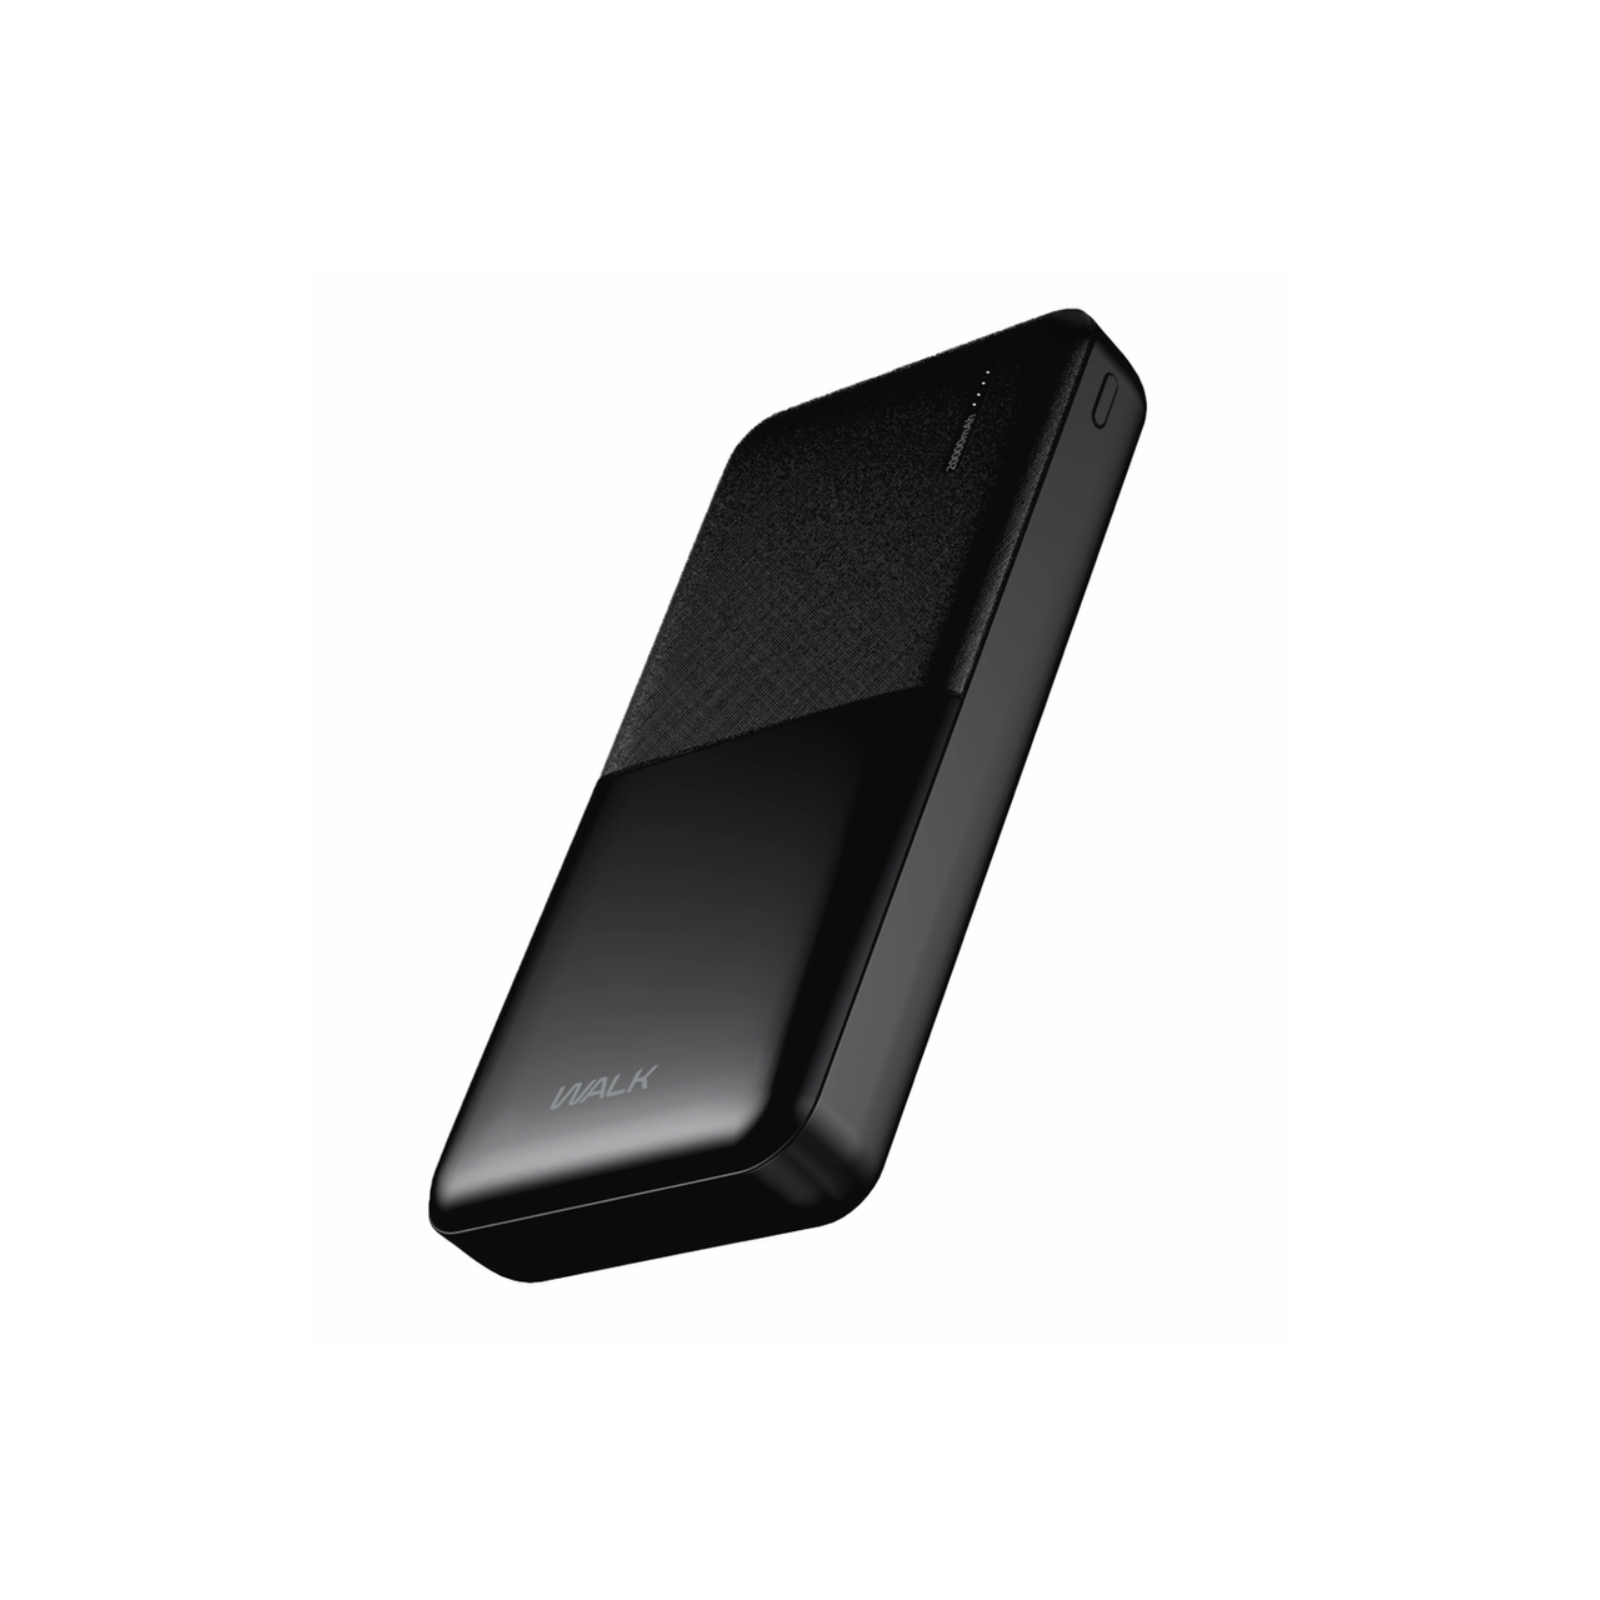 Батарея универсальная Walk Audio P302 20000mAh, Inp:Micro-USB/Type-C(5V/2A), Out:USB-A*2(5V/2A), Black (5060450979962) изображение 2